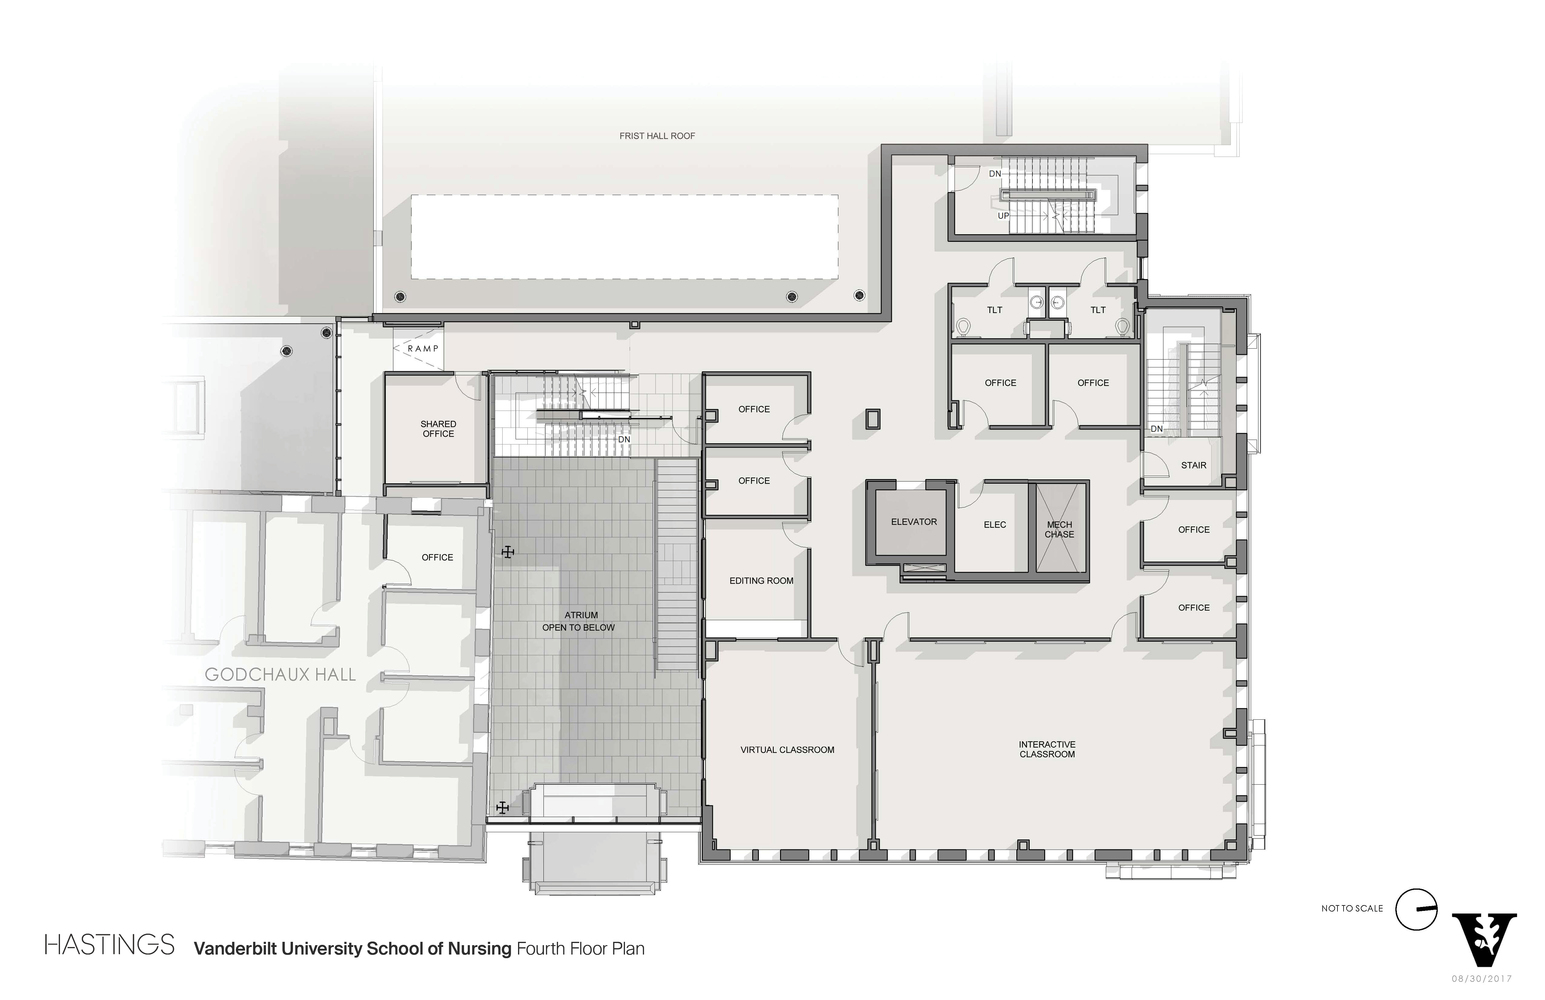 04_Vanderbilt_University_School_of_Nursing_Fourth_Floor_Plan.jpg